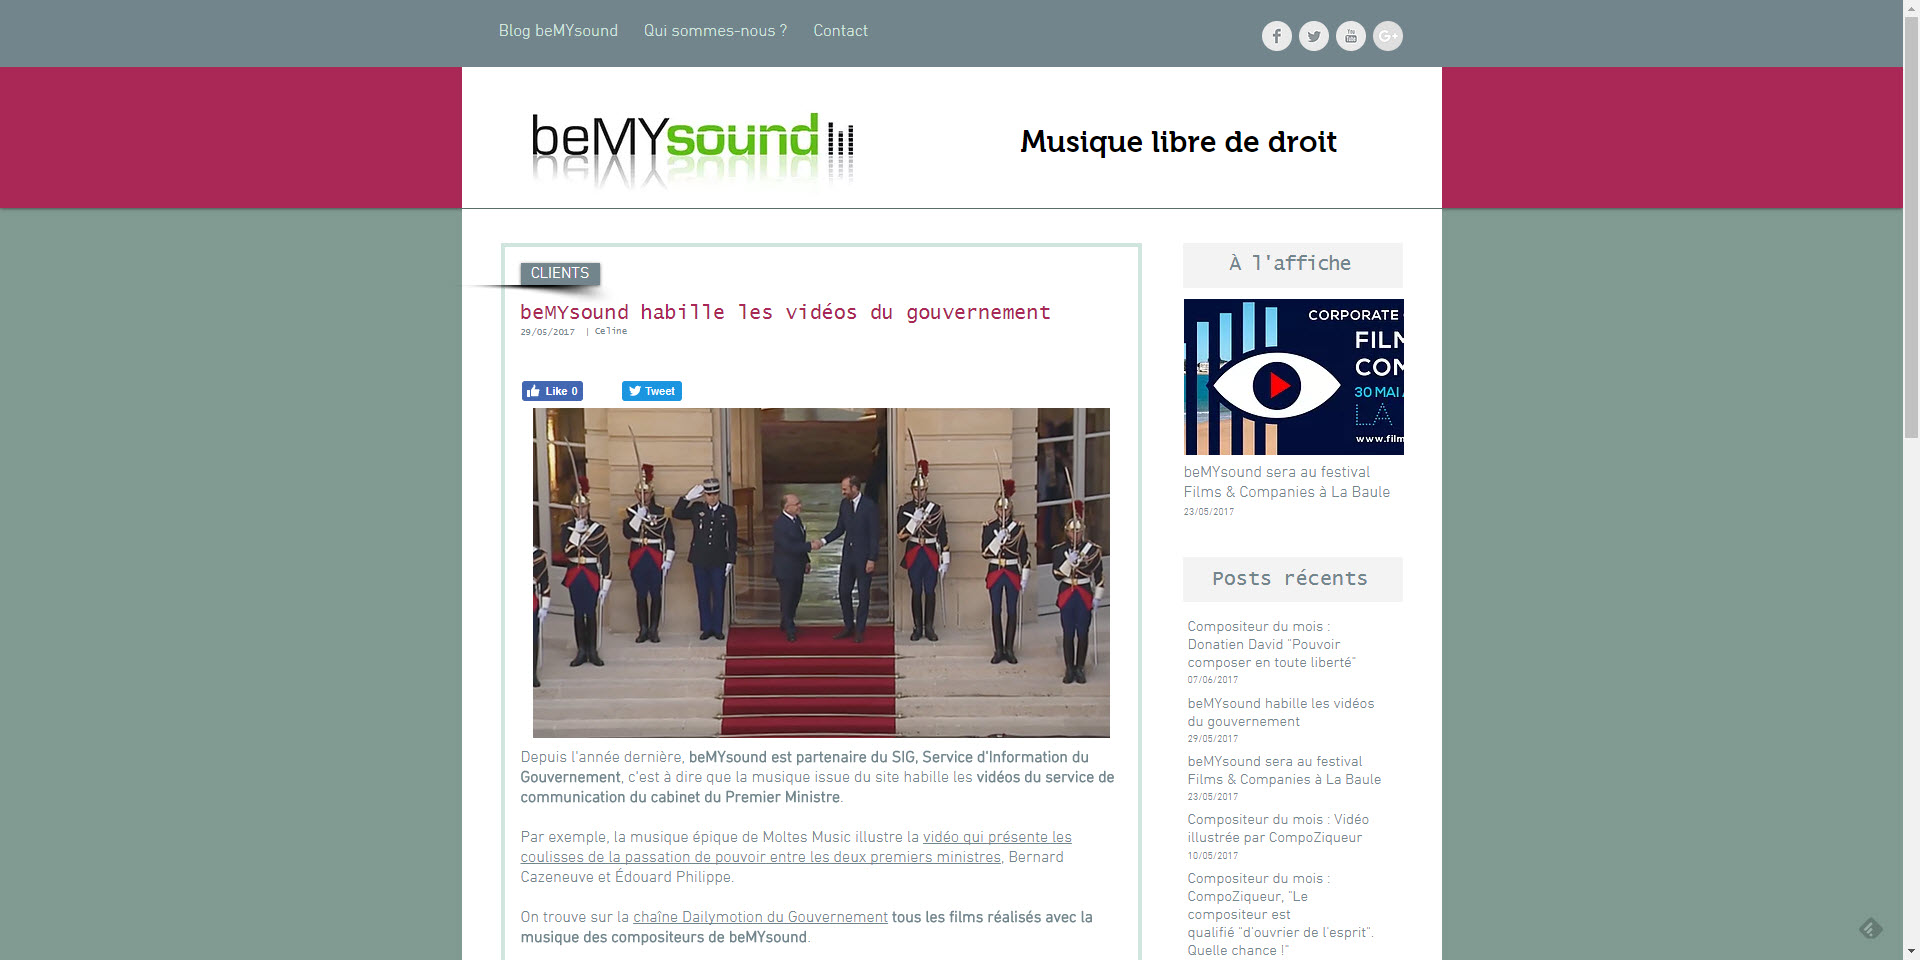 beMYsound.fr illustre les vidéos du gouvernement français